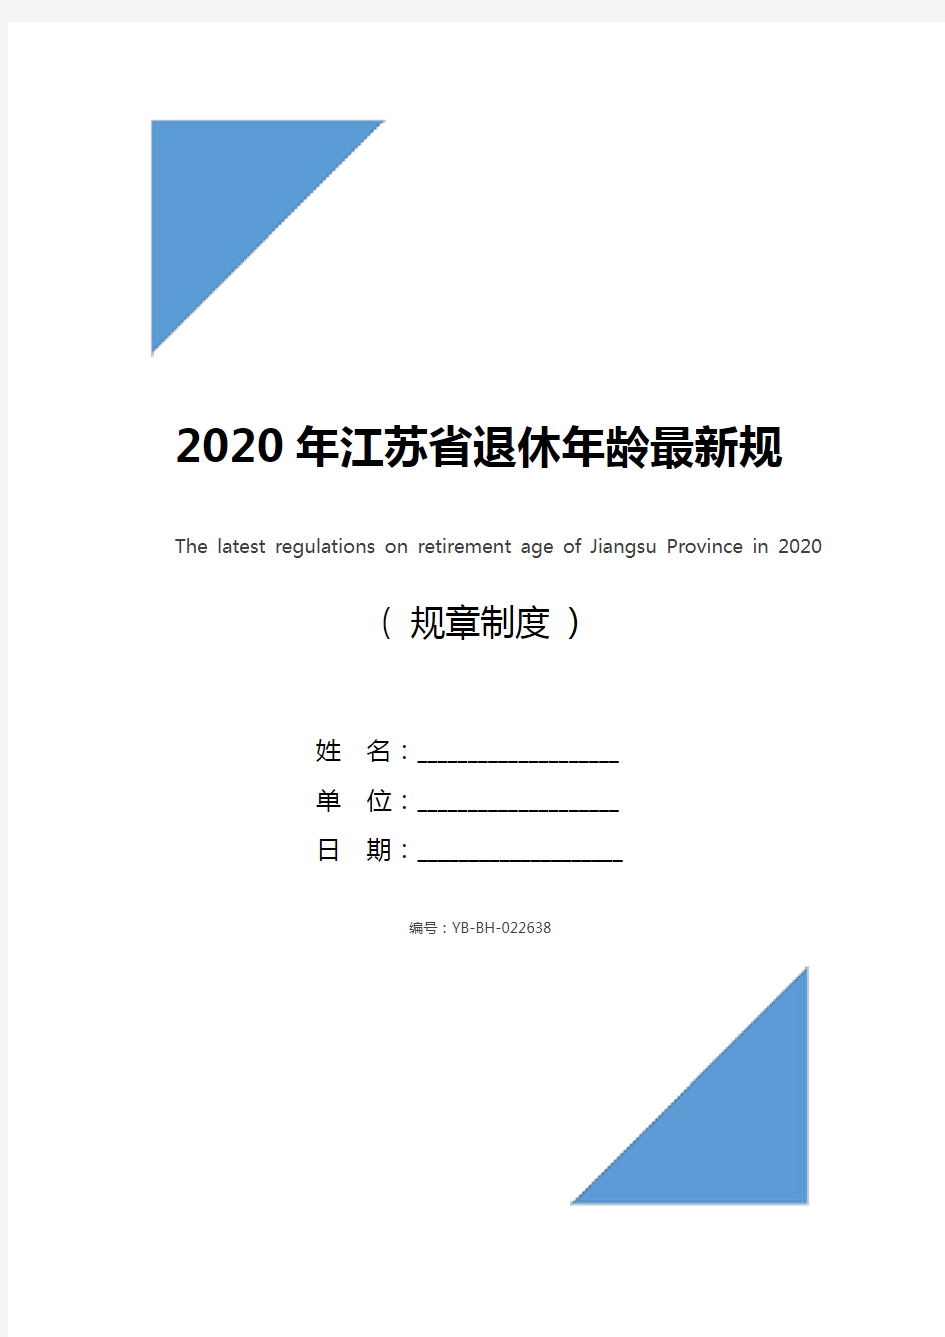 2020年江苏省退休年龄最新规定